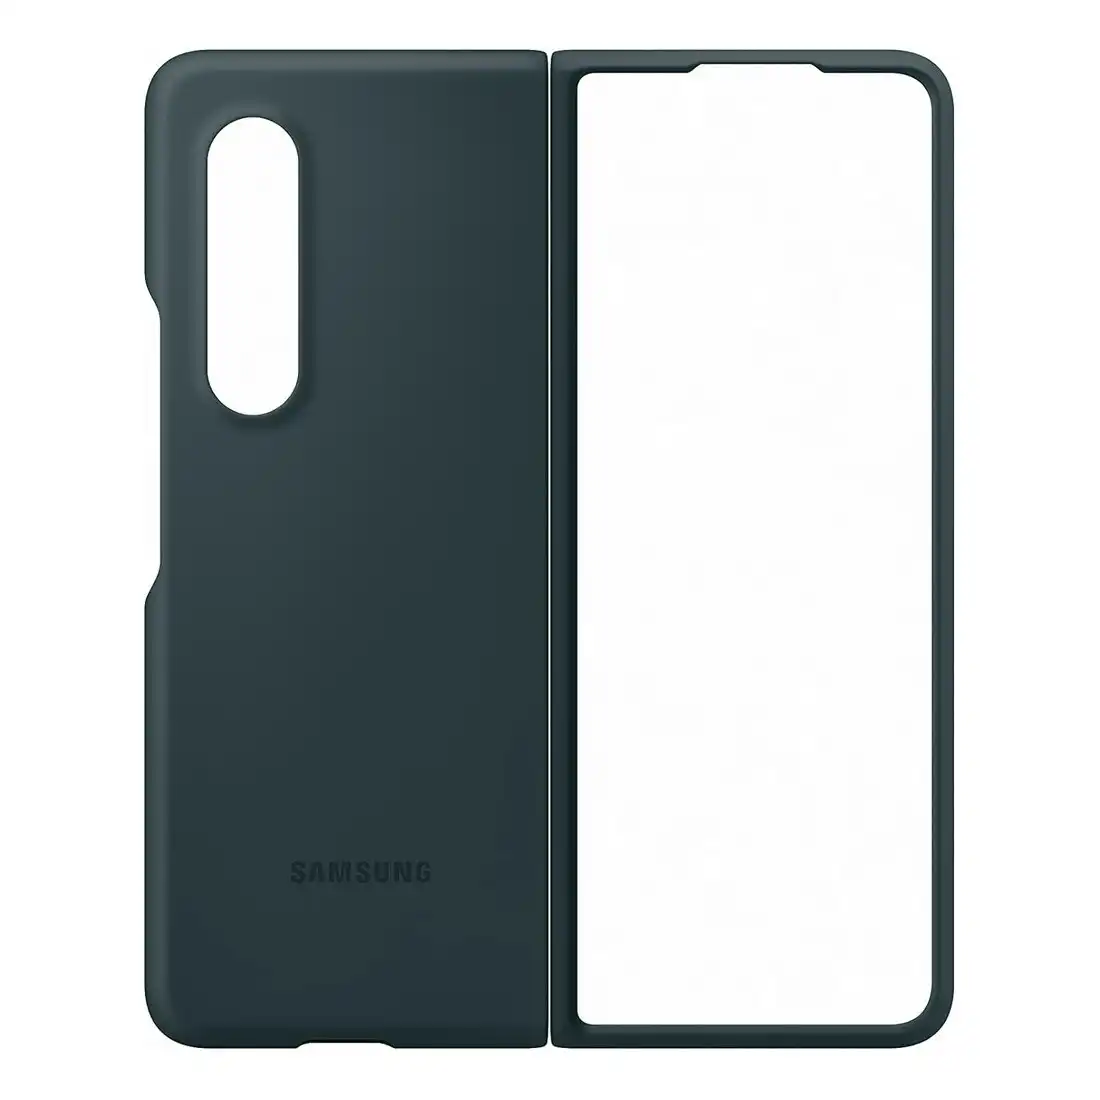 Samsung Galaxy Z Fold3 Silicon Cover EF- PF926TG - Green